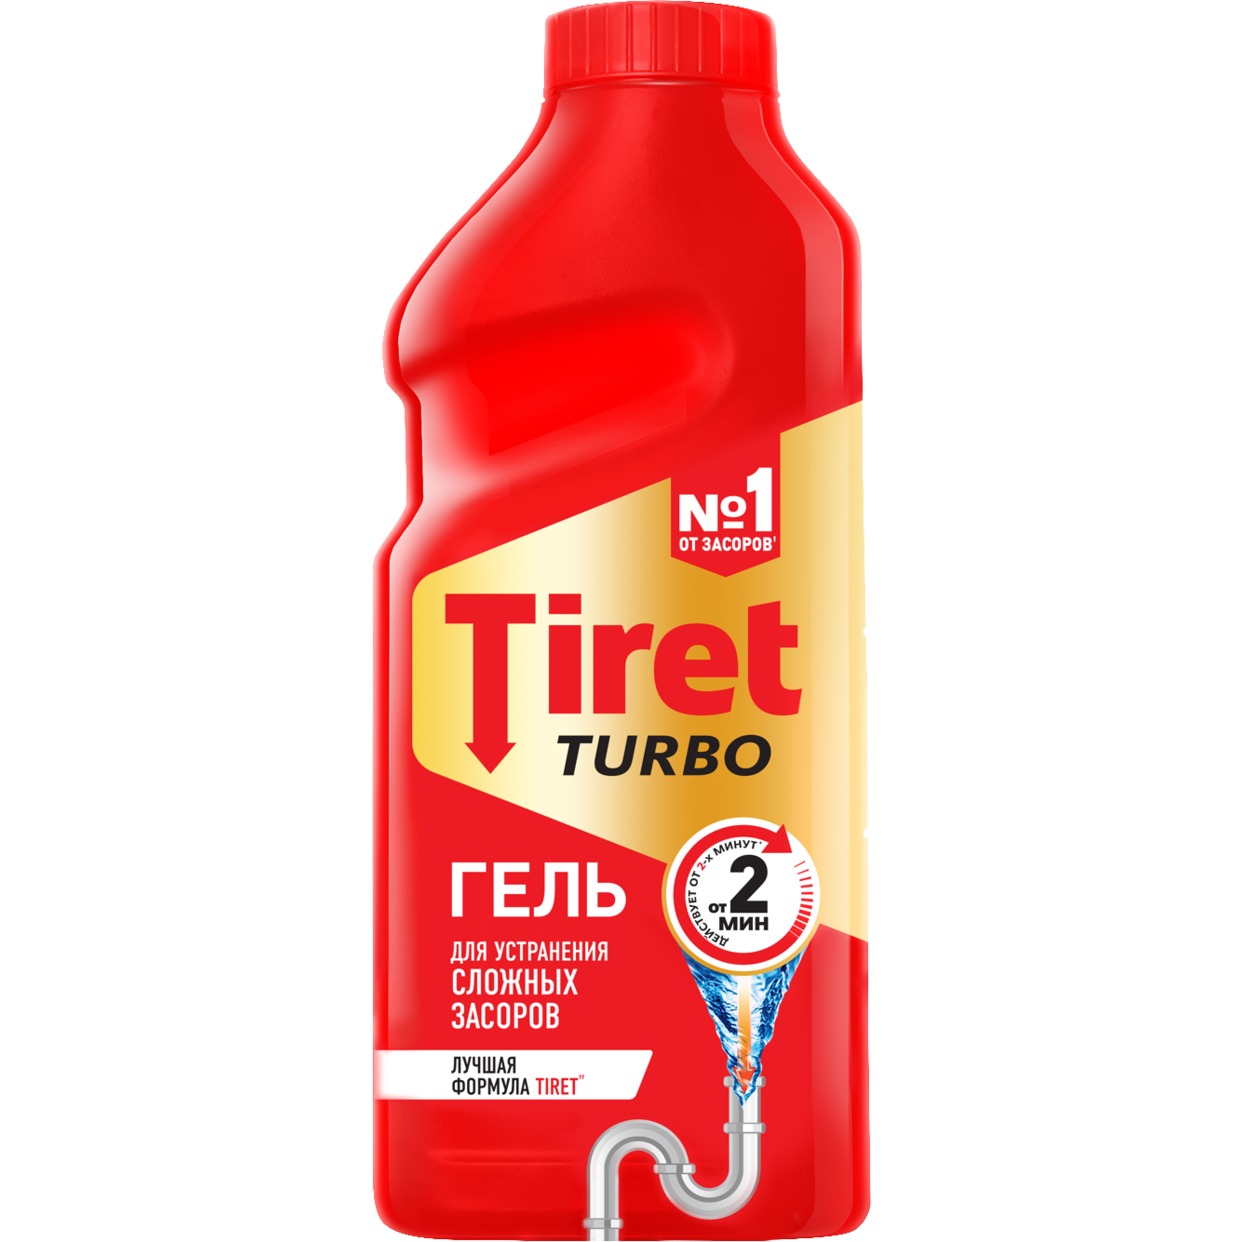 Гель для устранения засоров Tiret Turbo 500мл по акции в Пятерочке